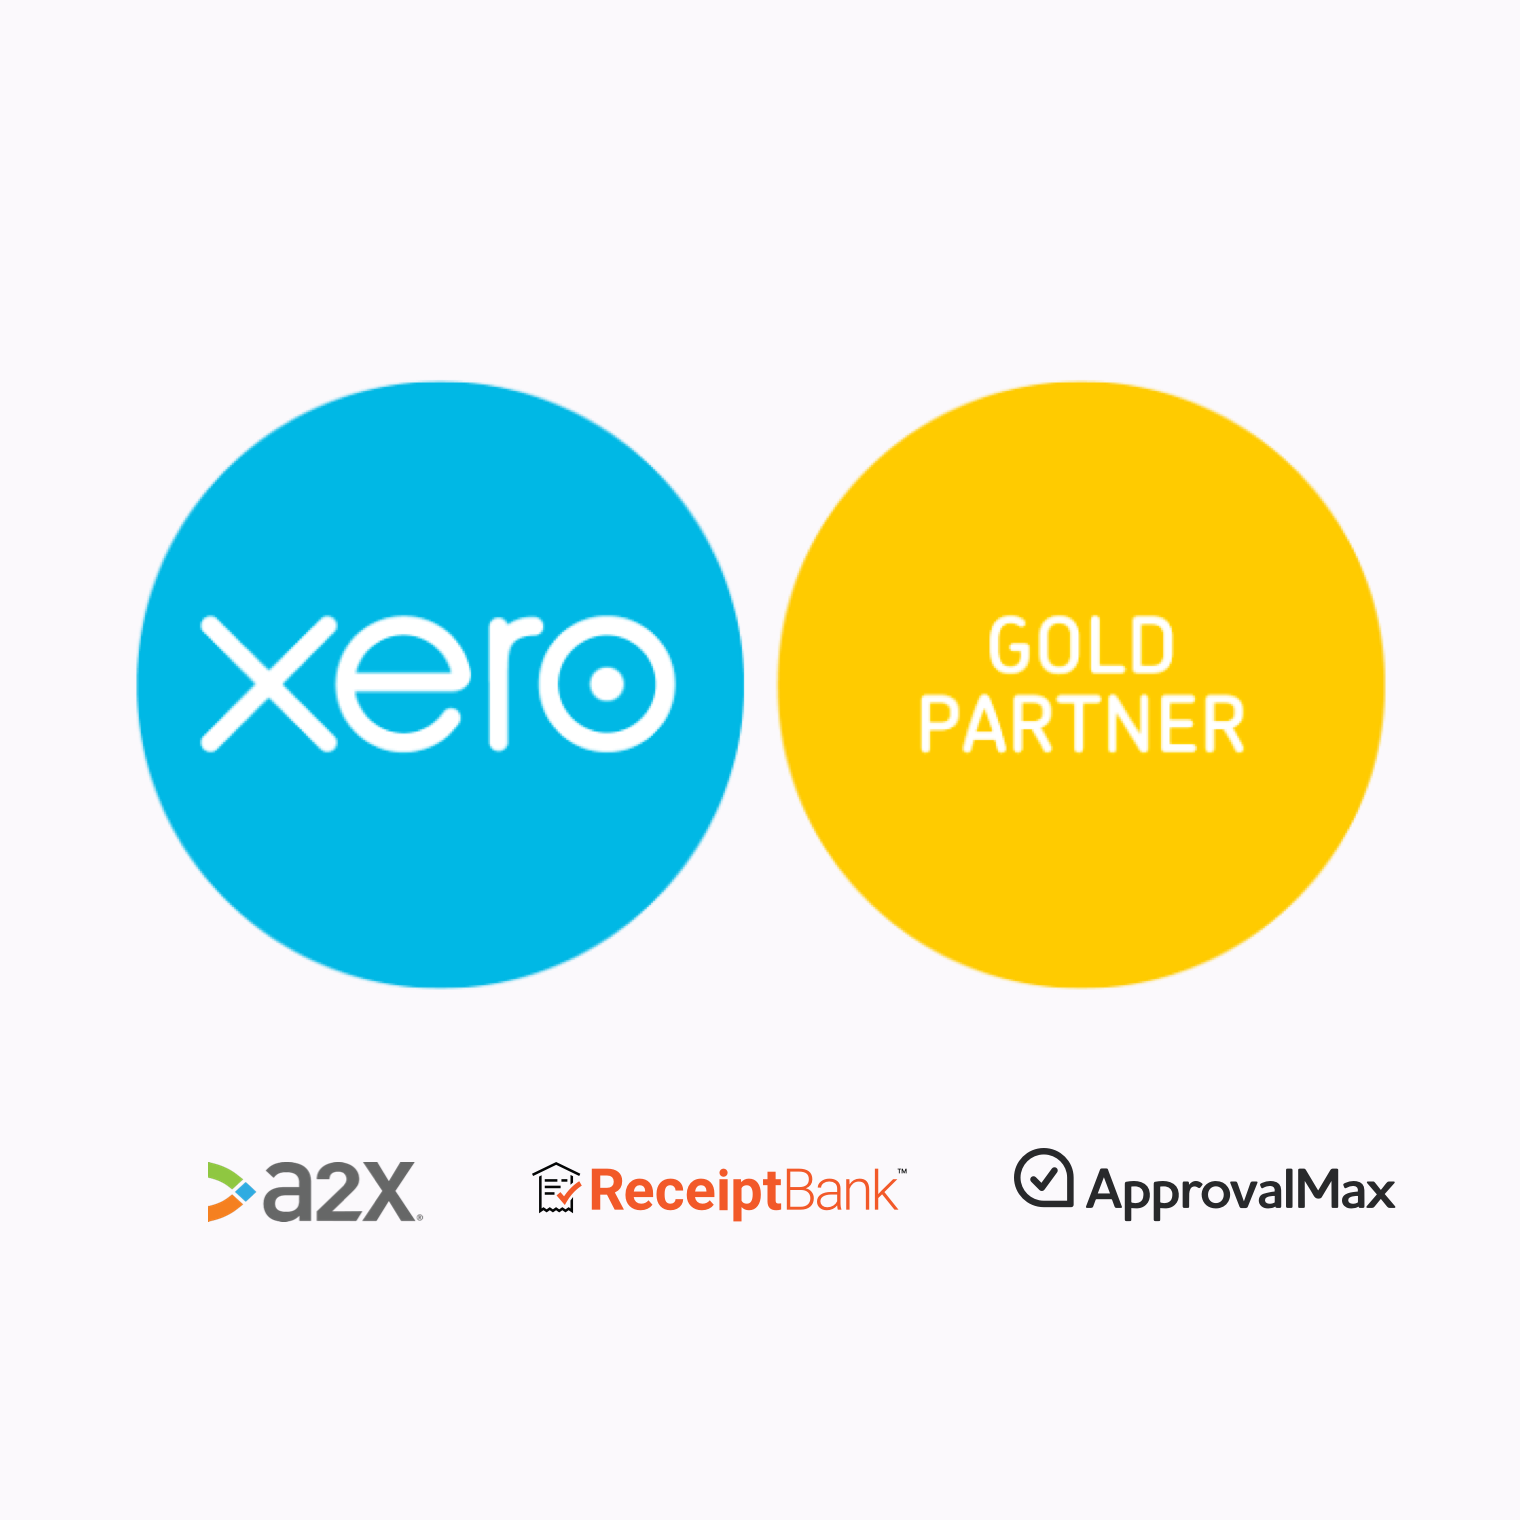 Wij zijn trots op ons Xero Gold partnerschap!